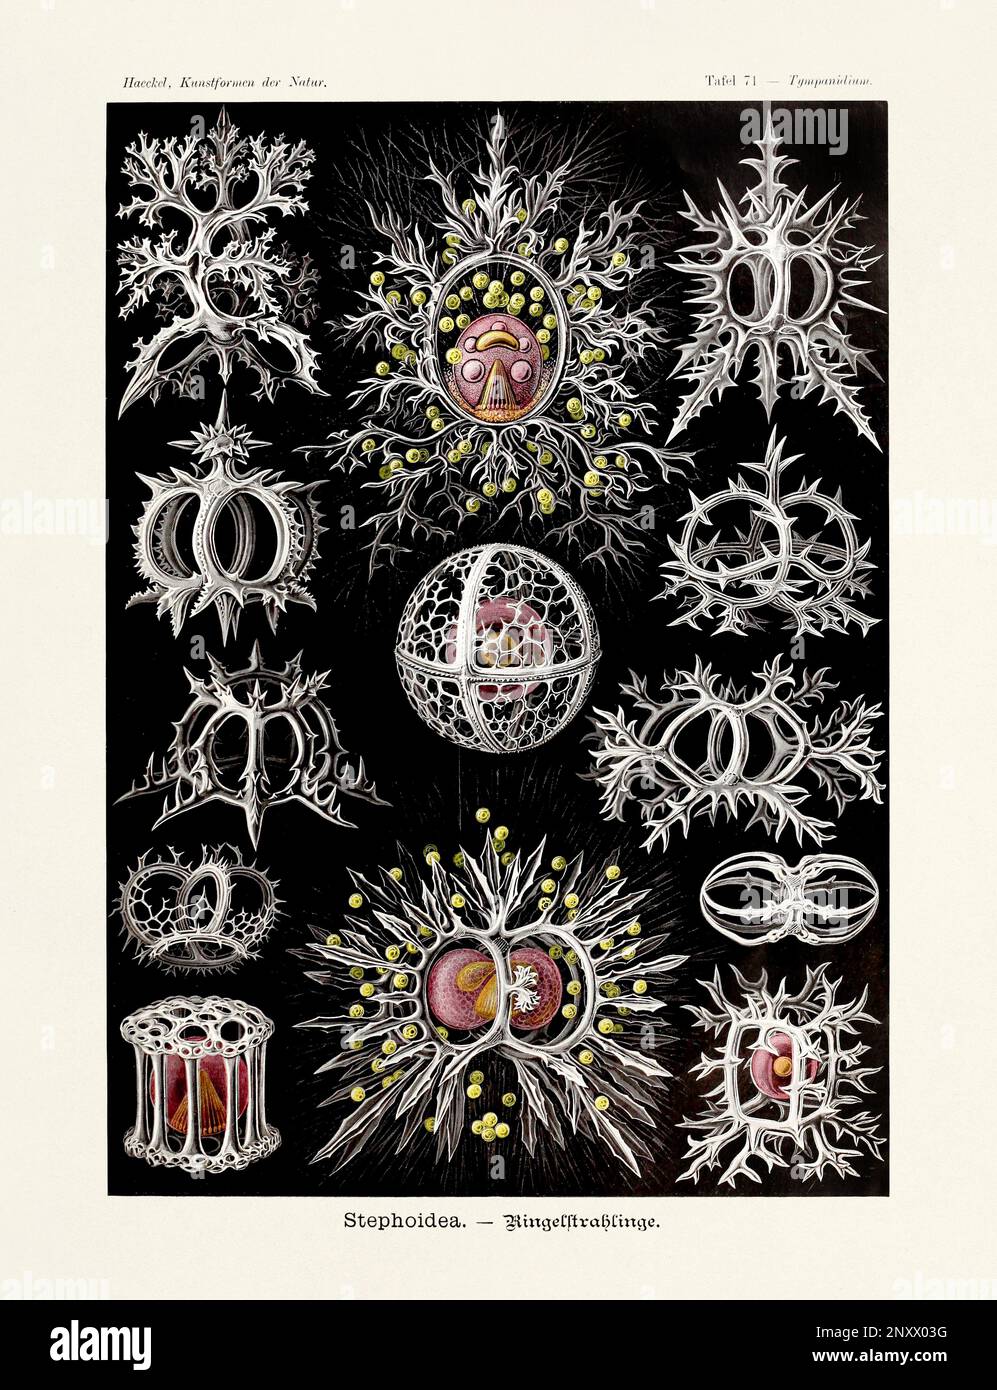 ERNST HAECKEL ART - Stephoidea - 19. Jahrhundert - Zoologische Antike Illustration - Illustrationen des Buches : "Kunstformen in der Natur" Stockfoto